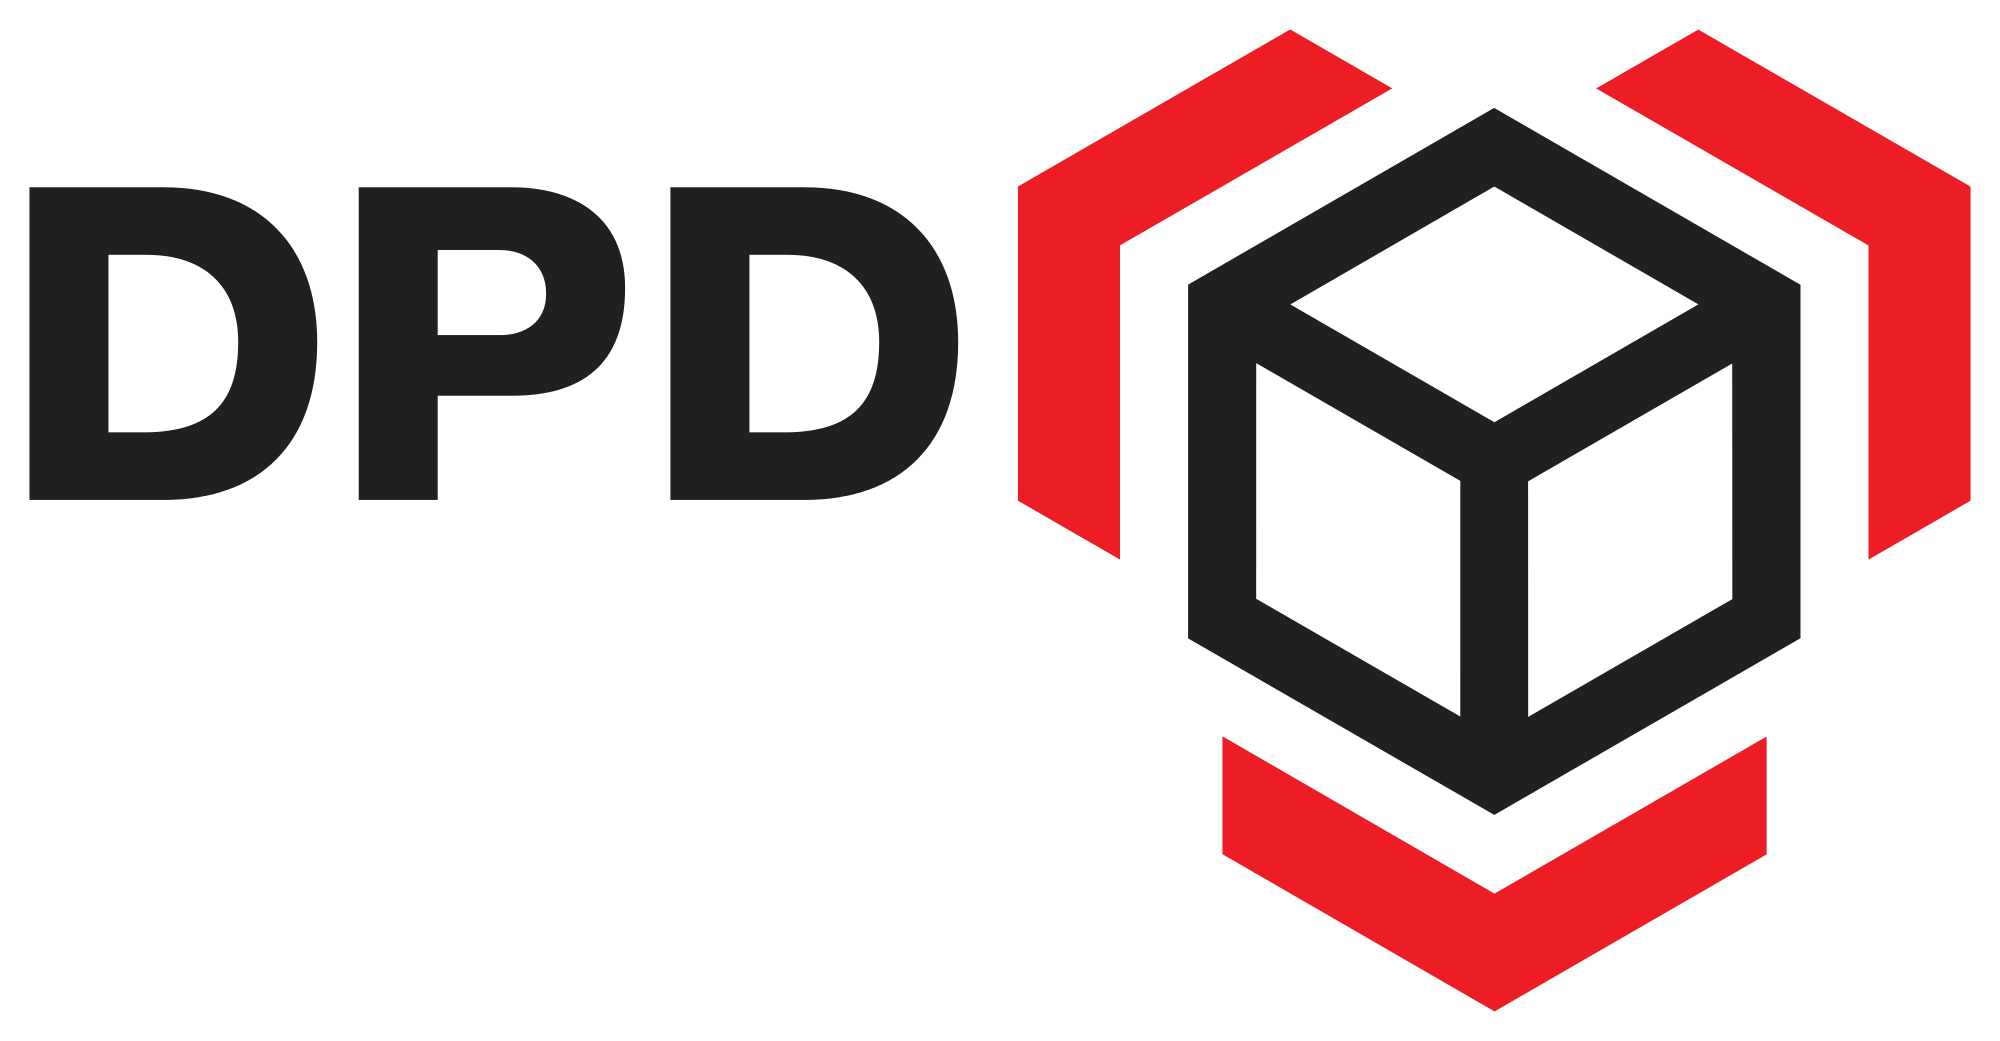 DPD means Dynamic Parcel Dist